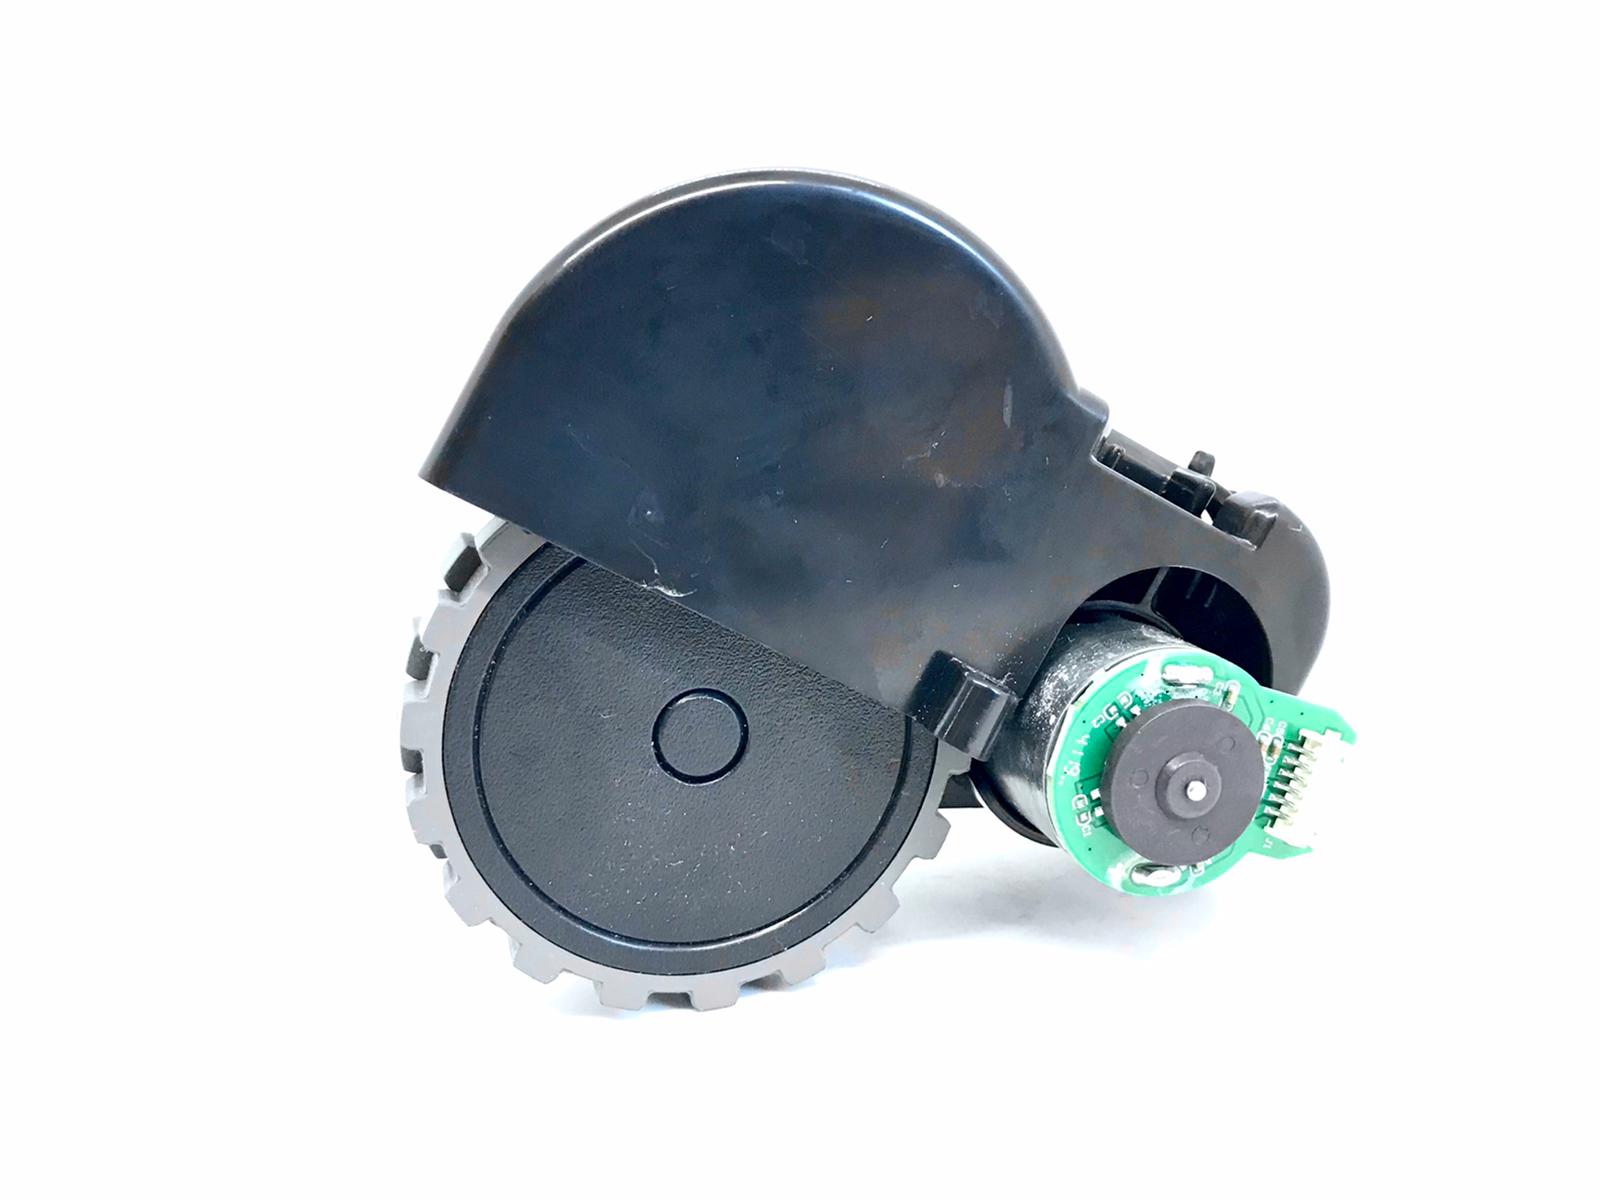 PACK de pièces détachées pour robot aspirateur NETBOT S15 2.0 - Create